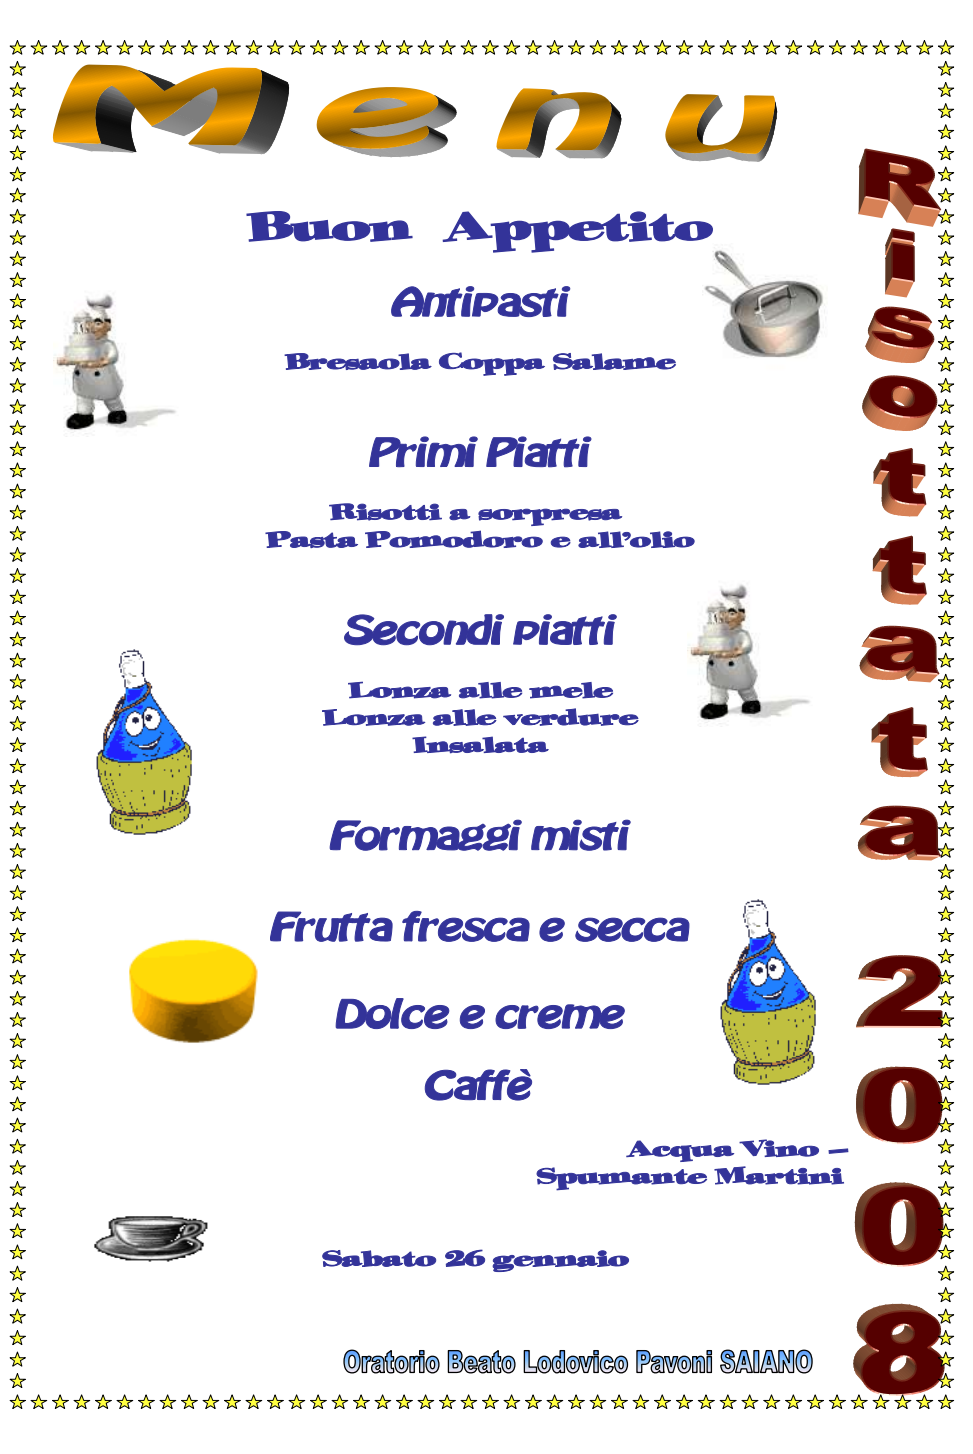 2008 01 26 menu